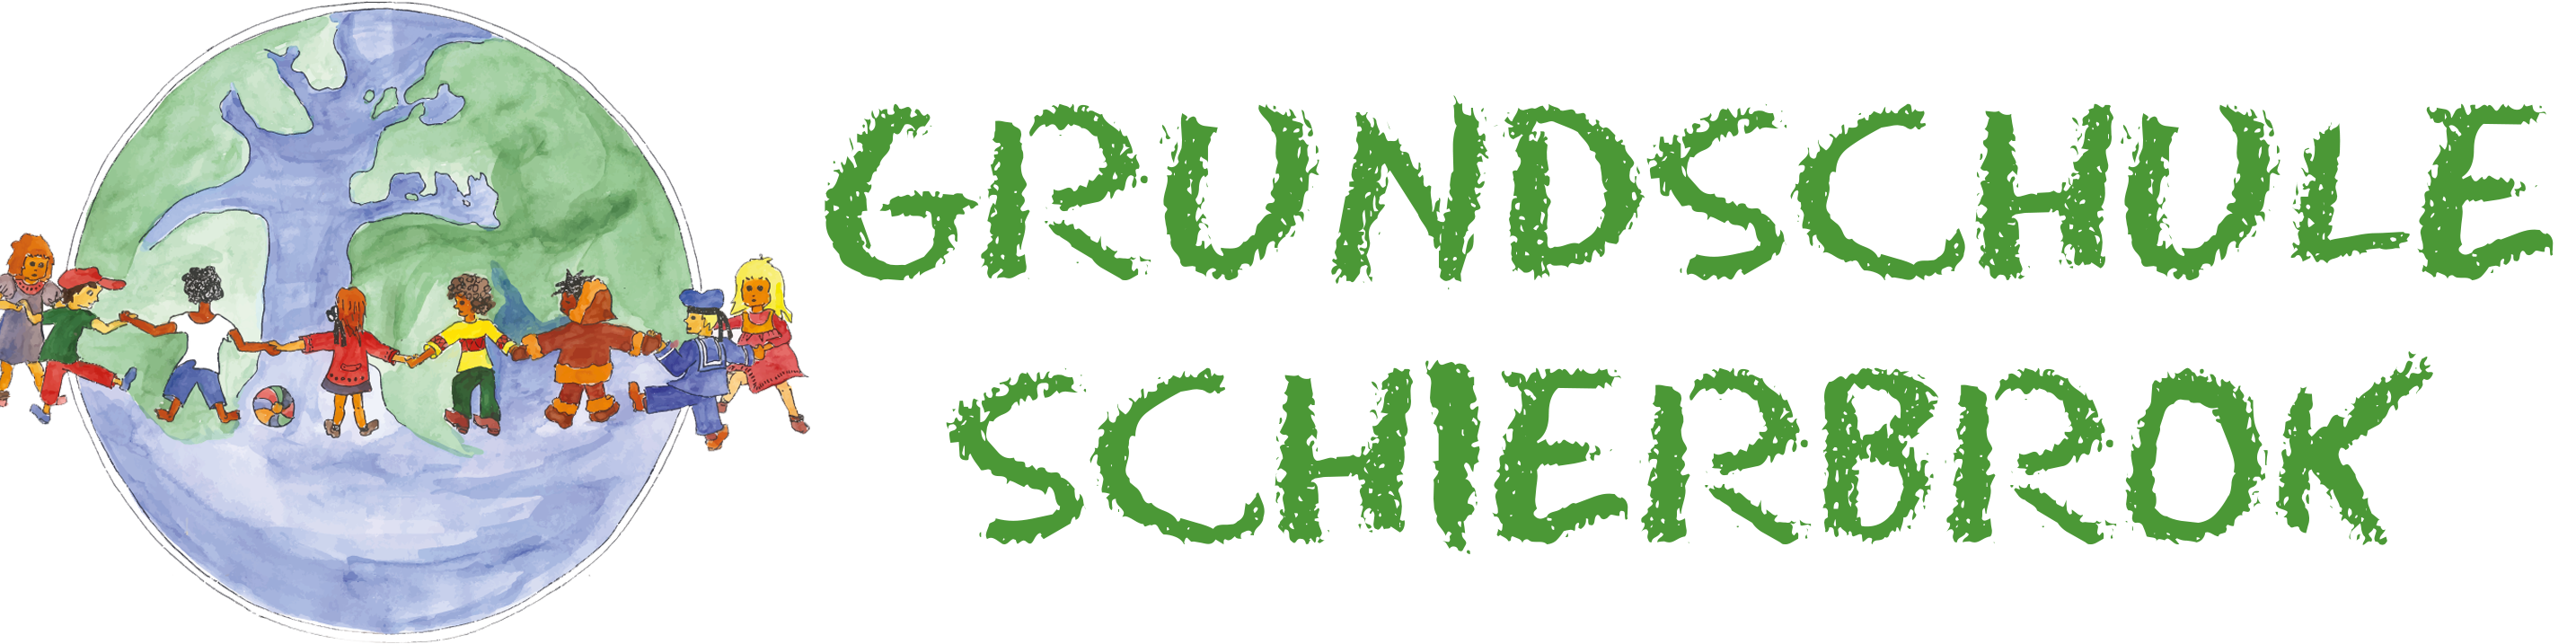 Grundschule Schierbrok logo